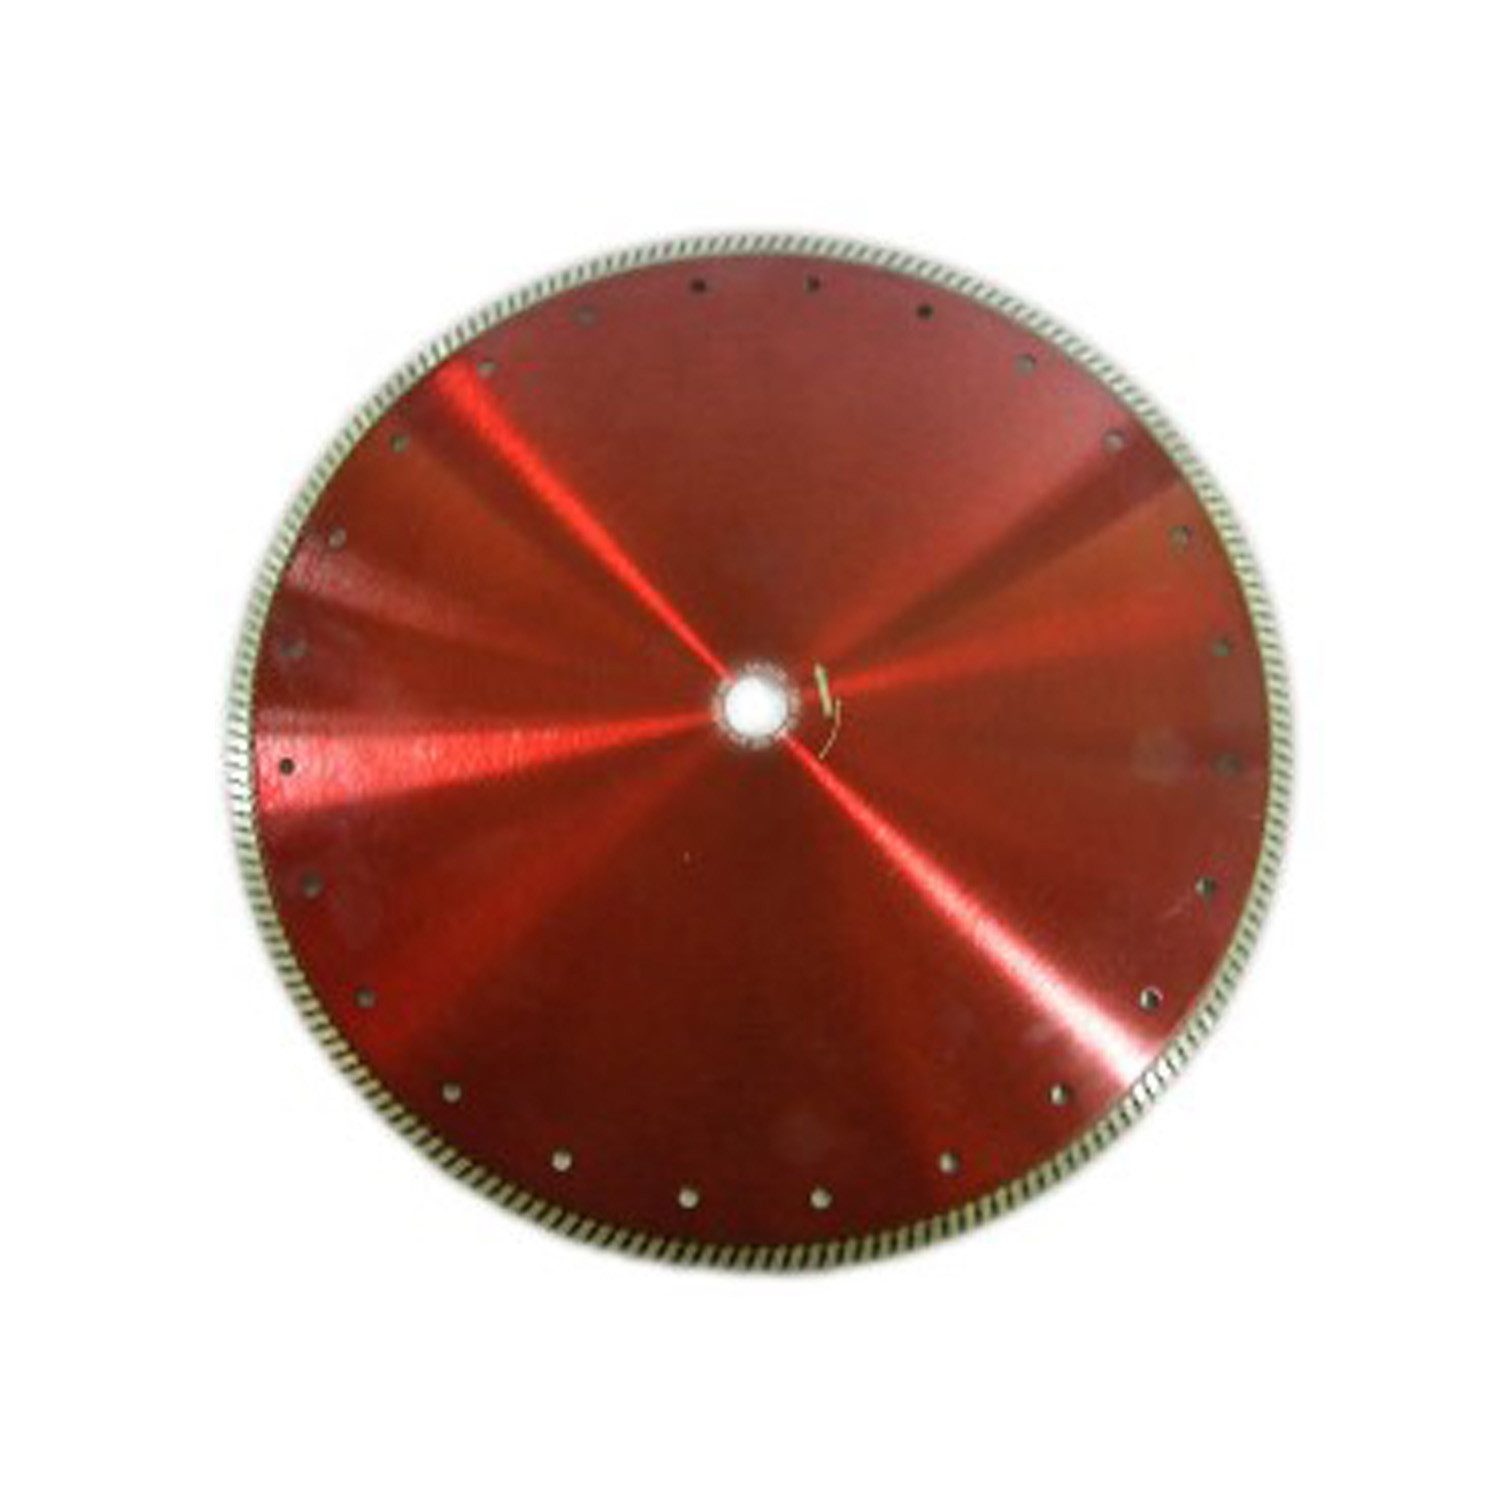 Fritz Krug Trennscheiben Diamantscheibe Red Devil 125/10 mm für Beton Granit Klinker Stein